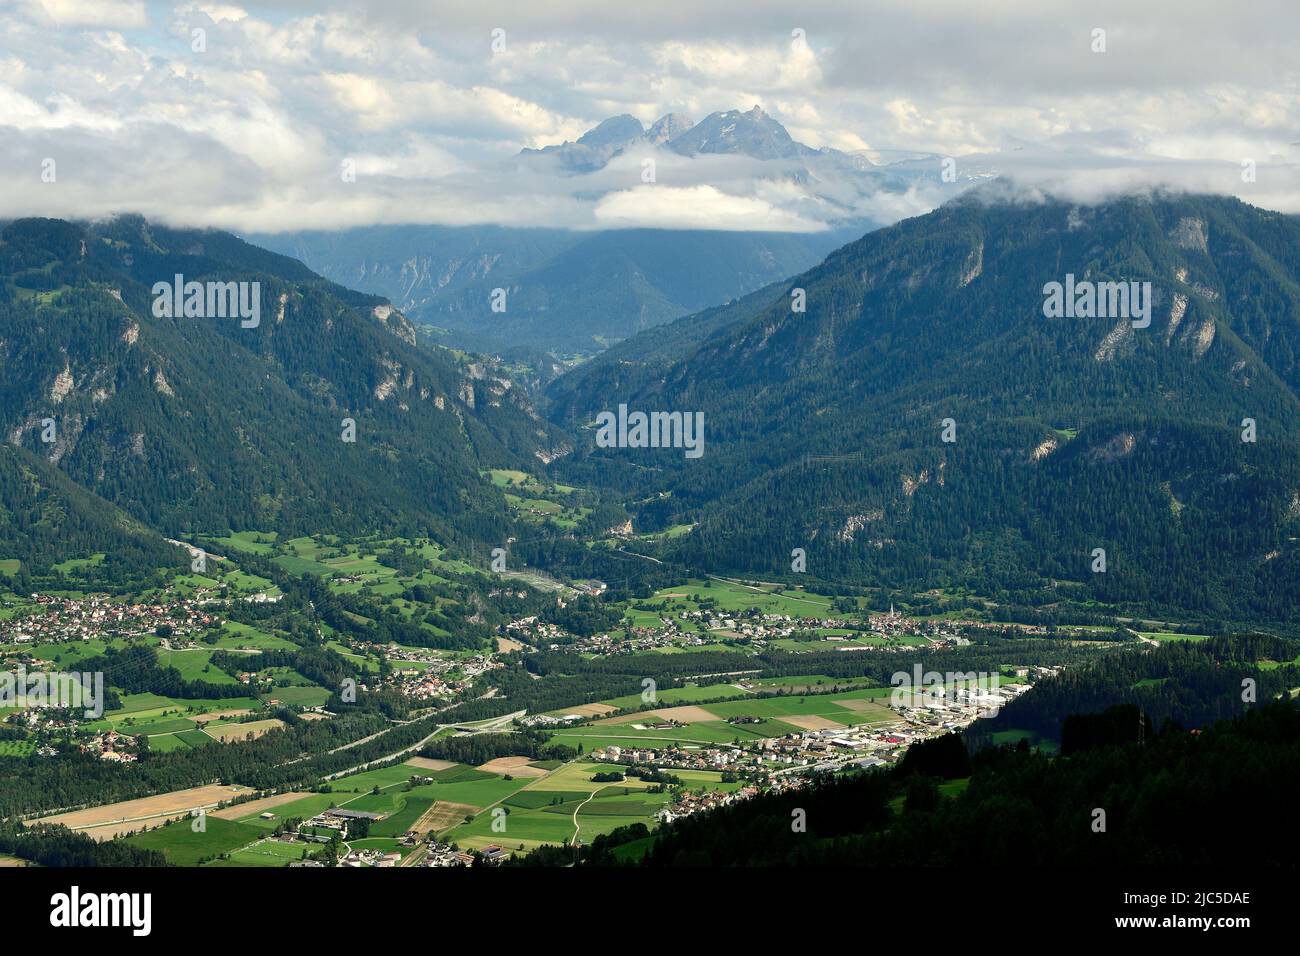 Dörfer, Thusis, Fürstenaubruck, Sils i.D., Scharans, Domleschg, Schin-Schlucht, Berg, Piz Ela, Wolken, Kanton Graubünden, Schweiz Foto de stock